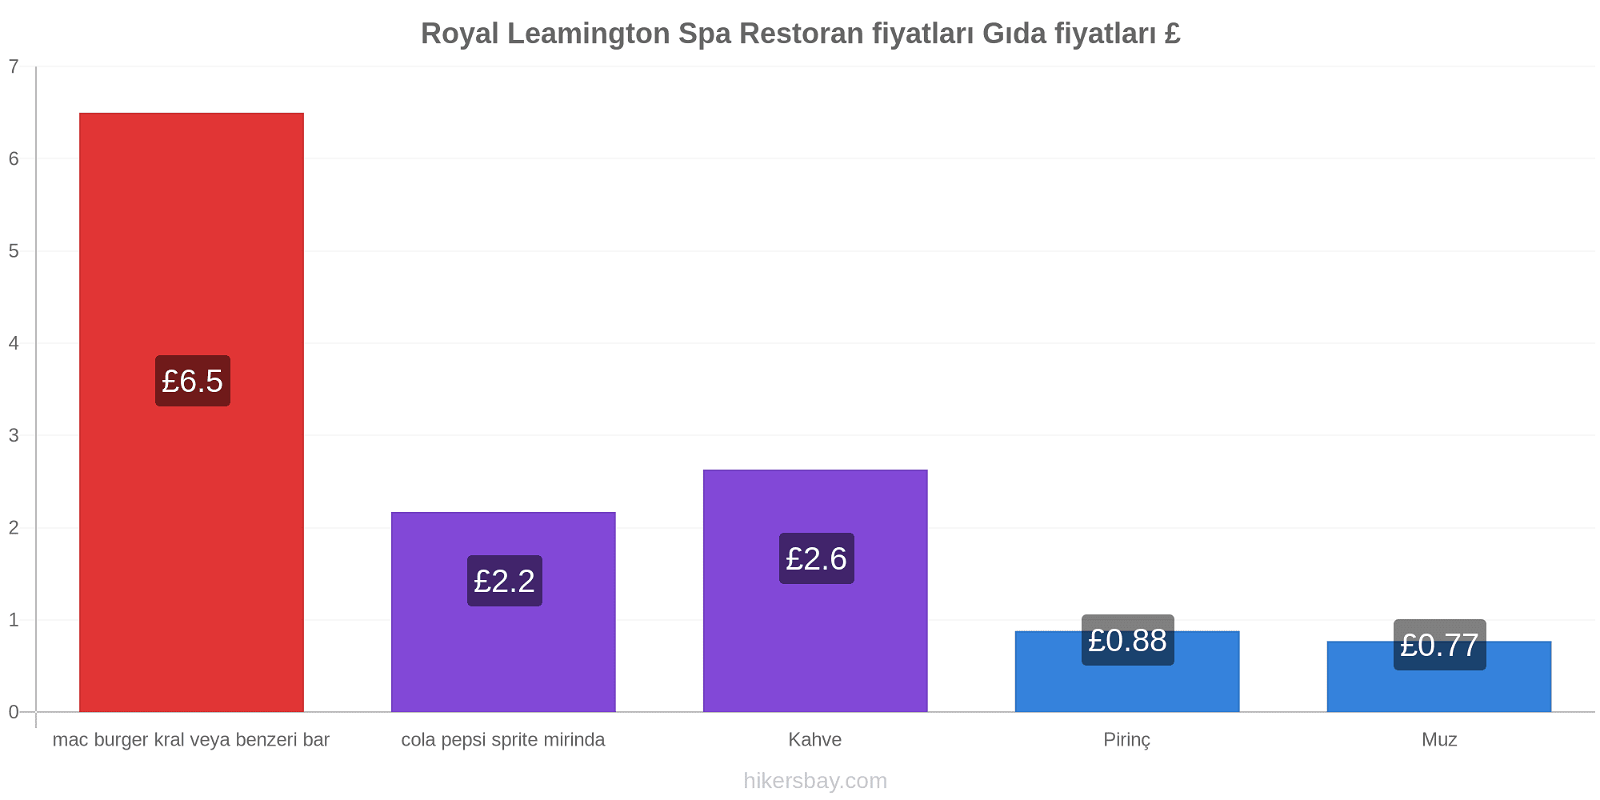 Royal Leamington Spa fiyat değişiklikleri hikersbay.com